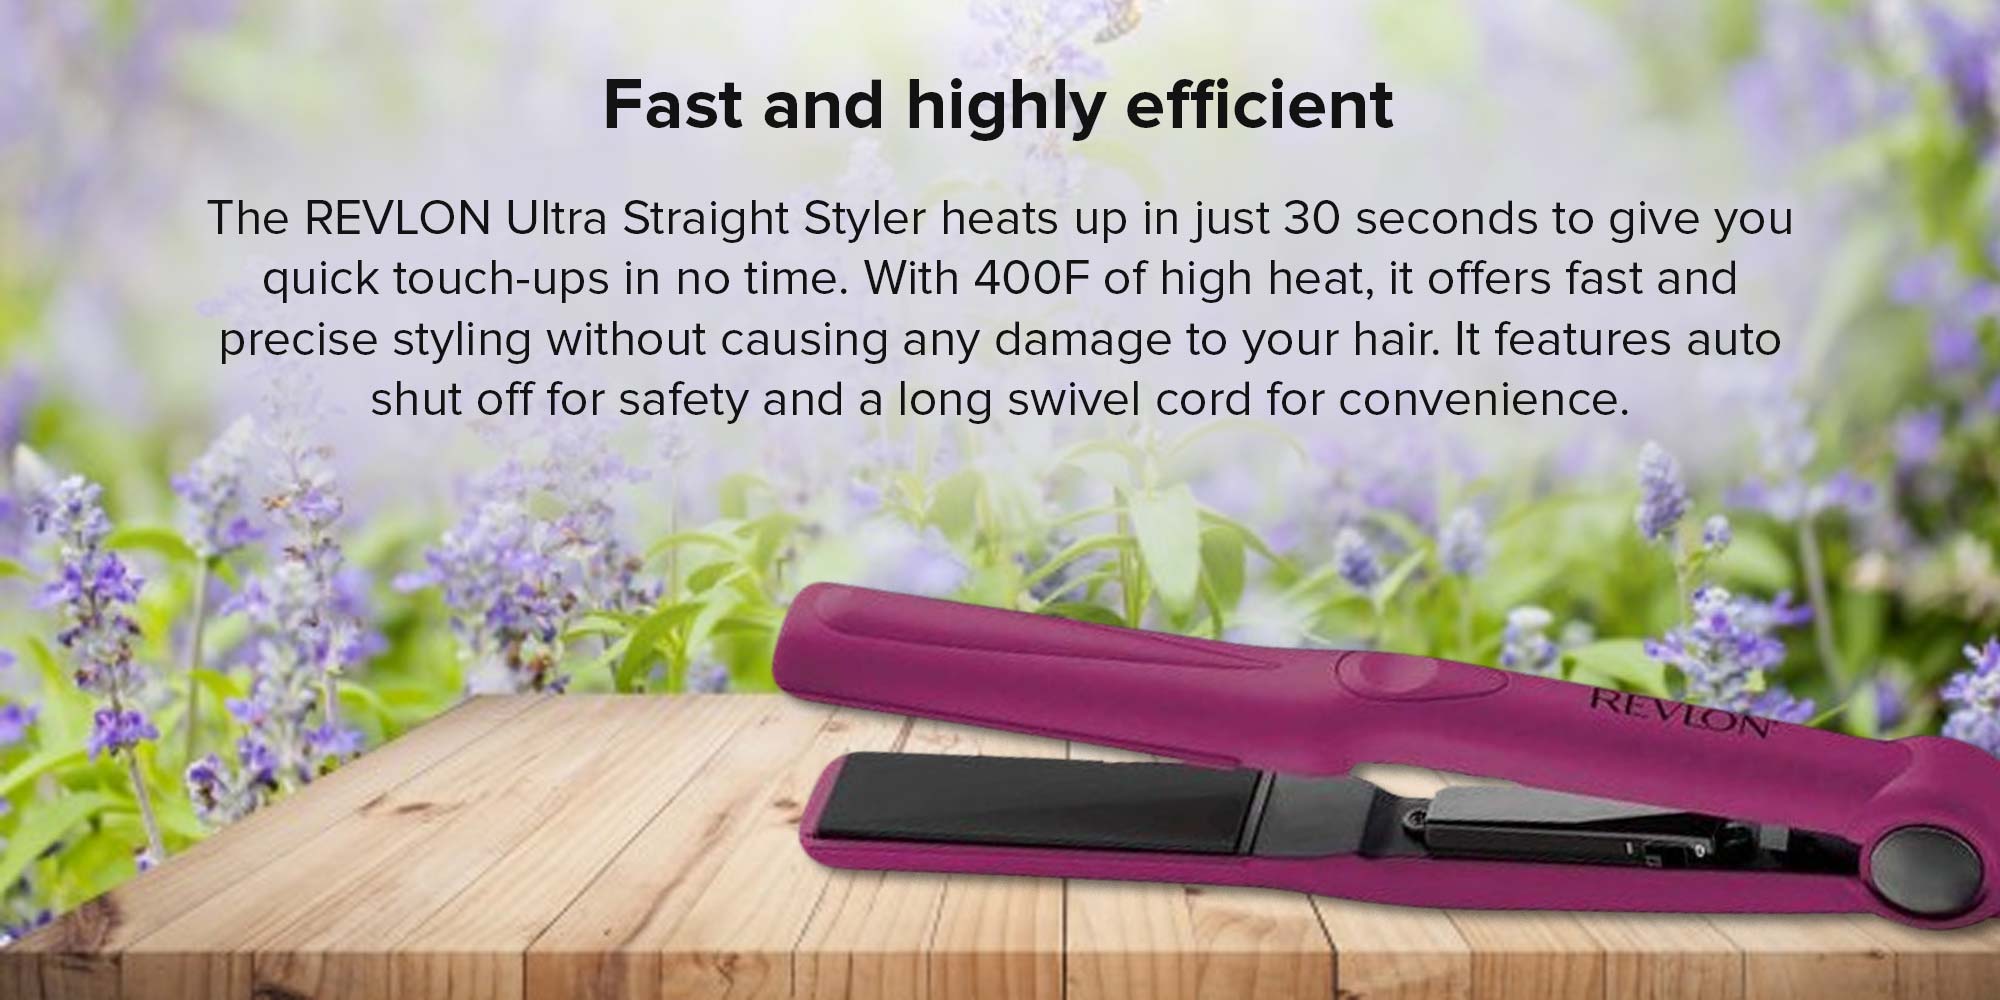 Essentials Hair Straightener Pink